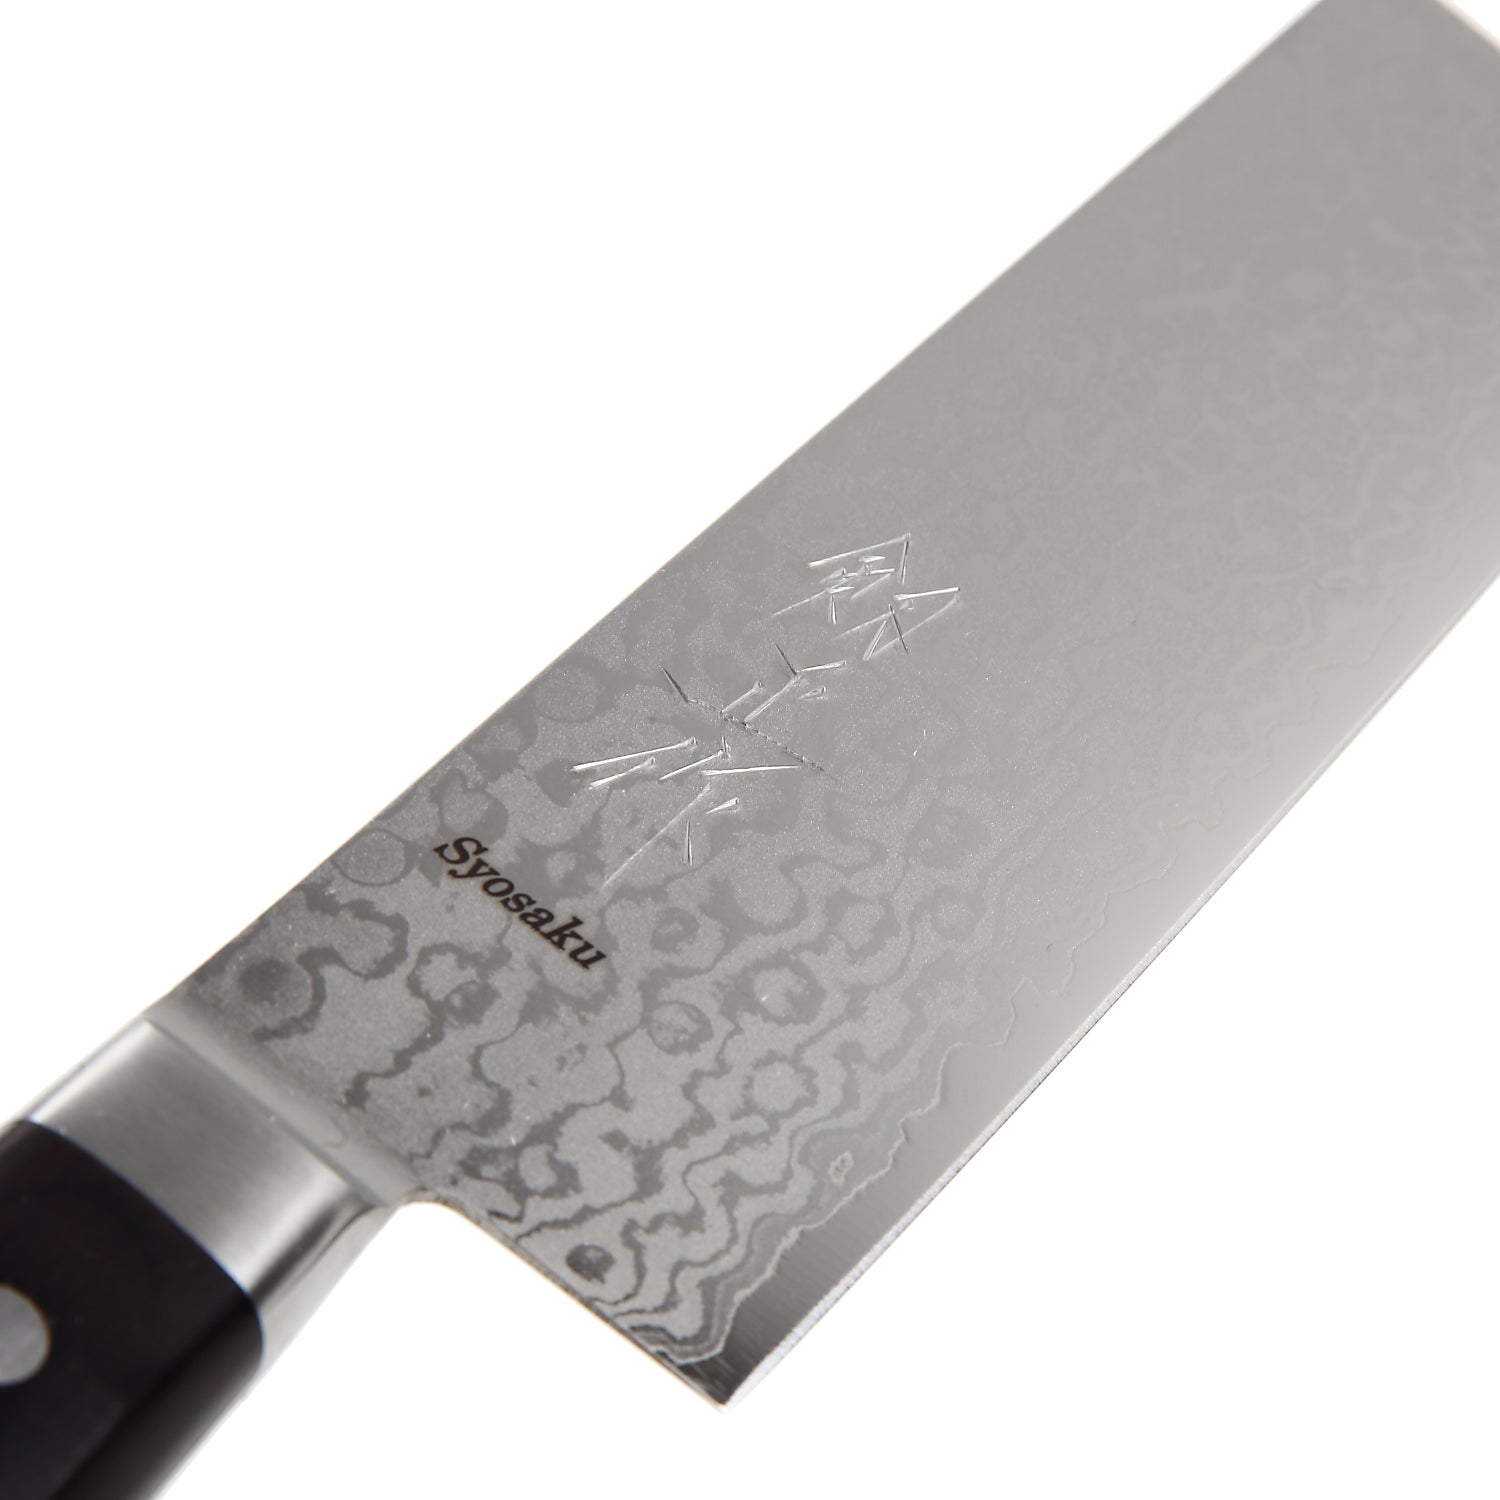 Syosaku Japanese Vegetable Knife Shaded Damascus VG-10 16 Layer Black Pakkawood Handle, Nakiri 6.3-inch (160mm)